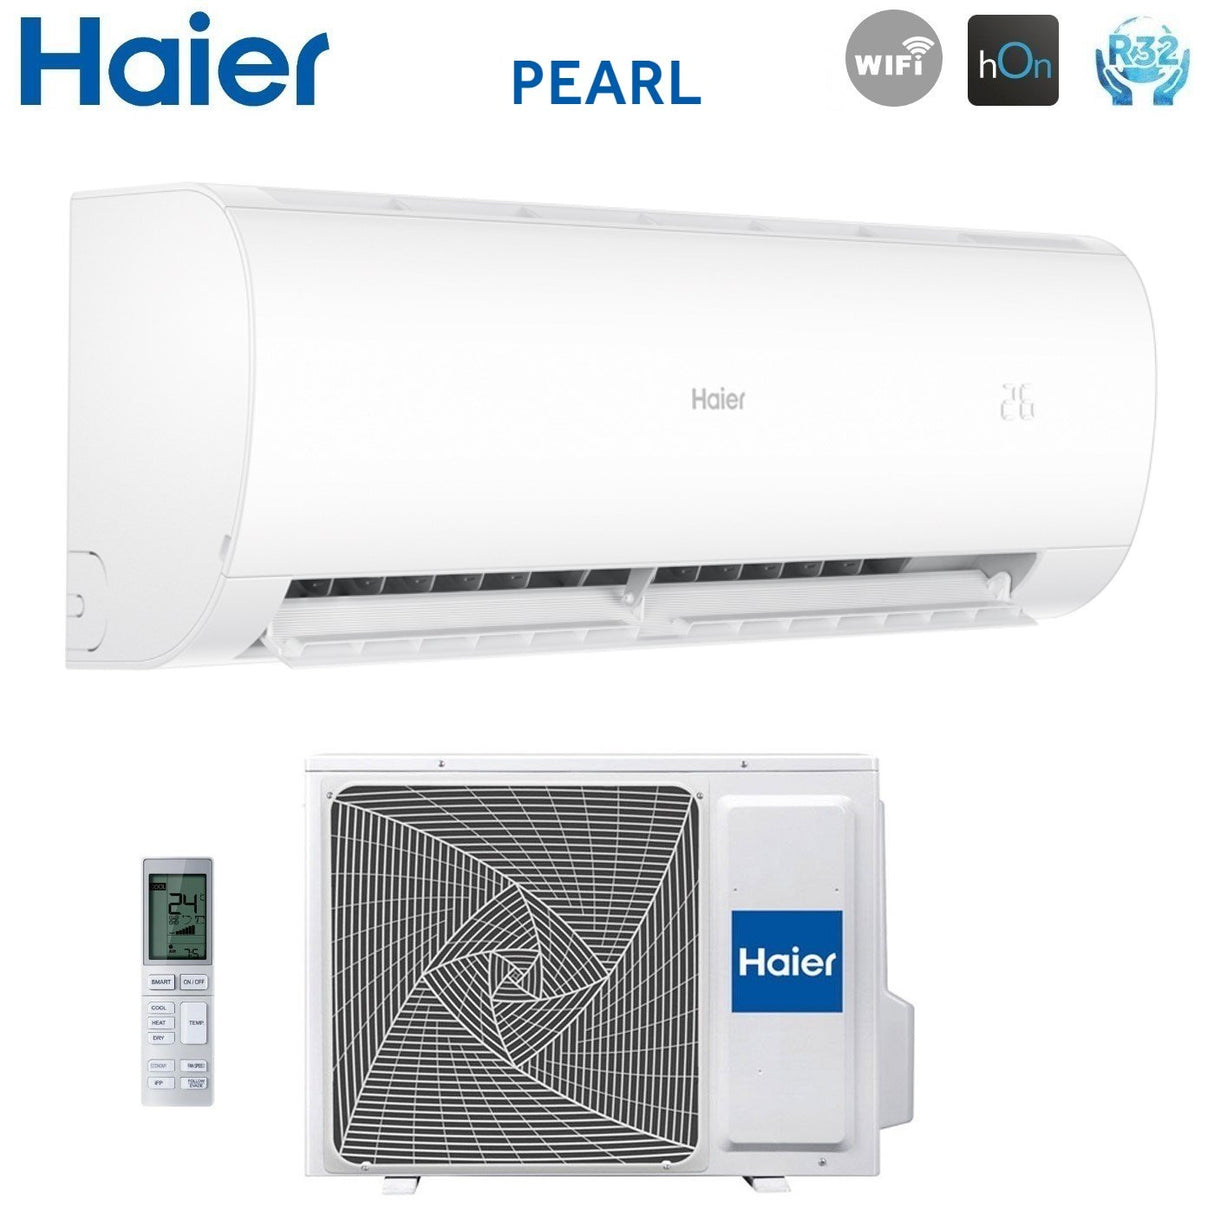 immagine-4-haier-climatizzatore-condizionatore-haier-inverter-serie-pearl-12000-btu-as35pbahra-r-32-wi-fi-integrato-aa